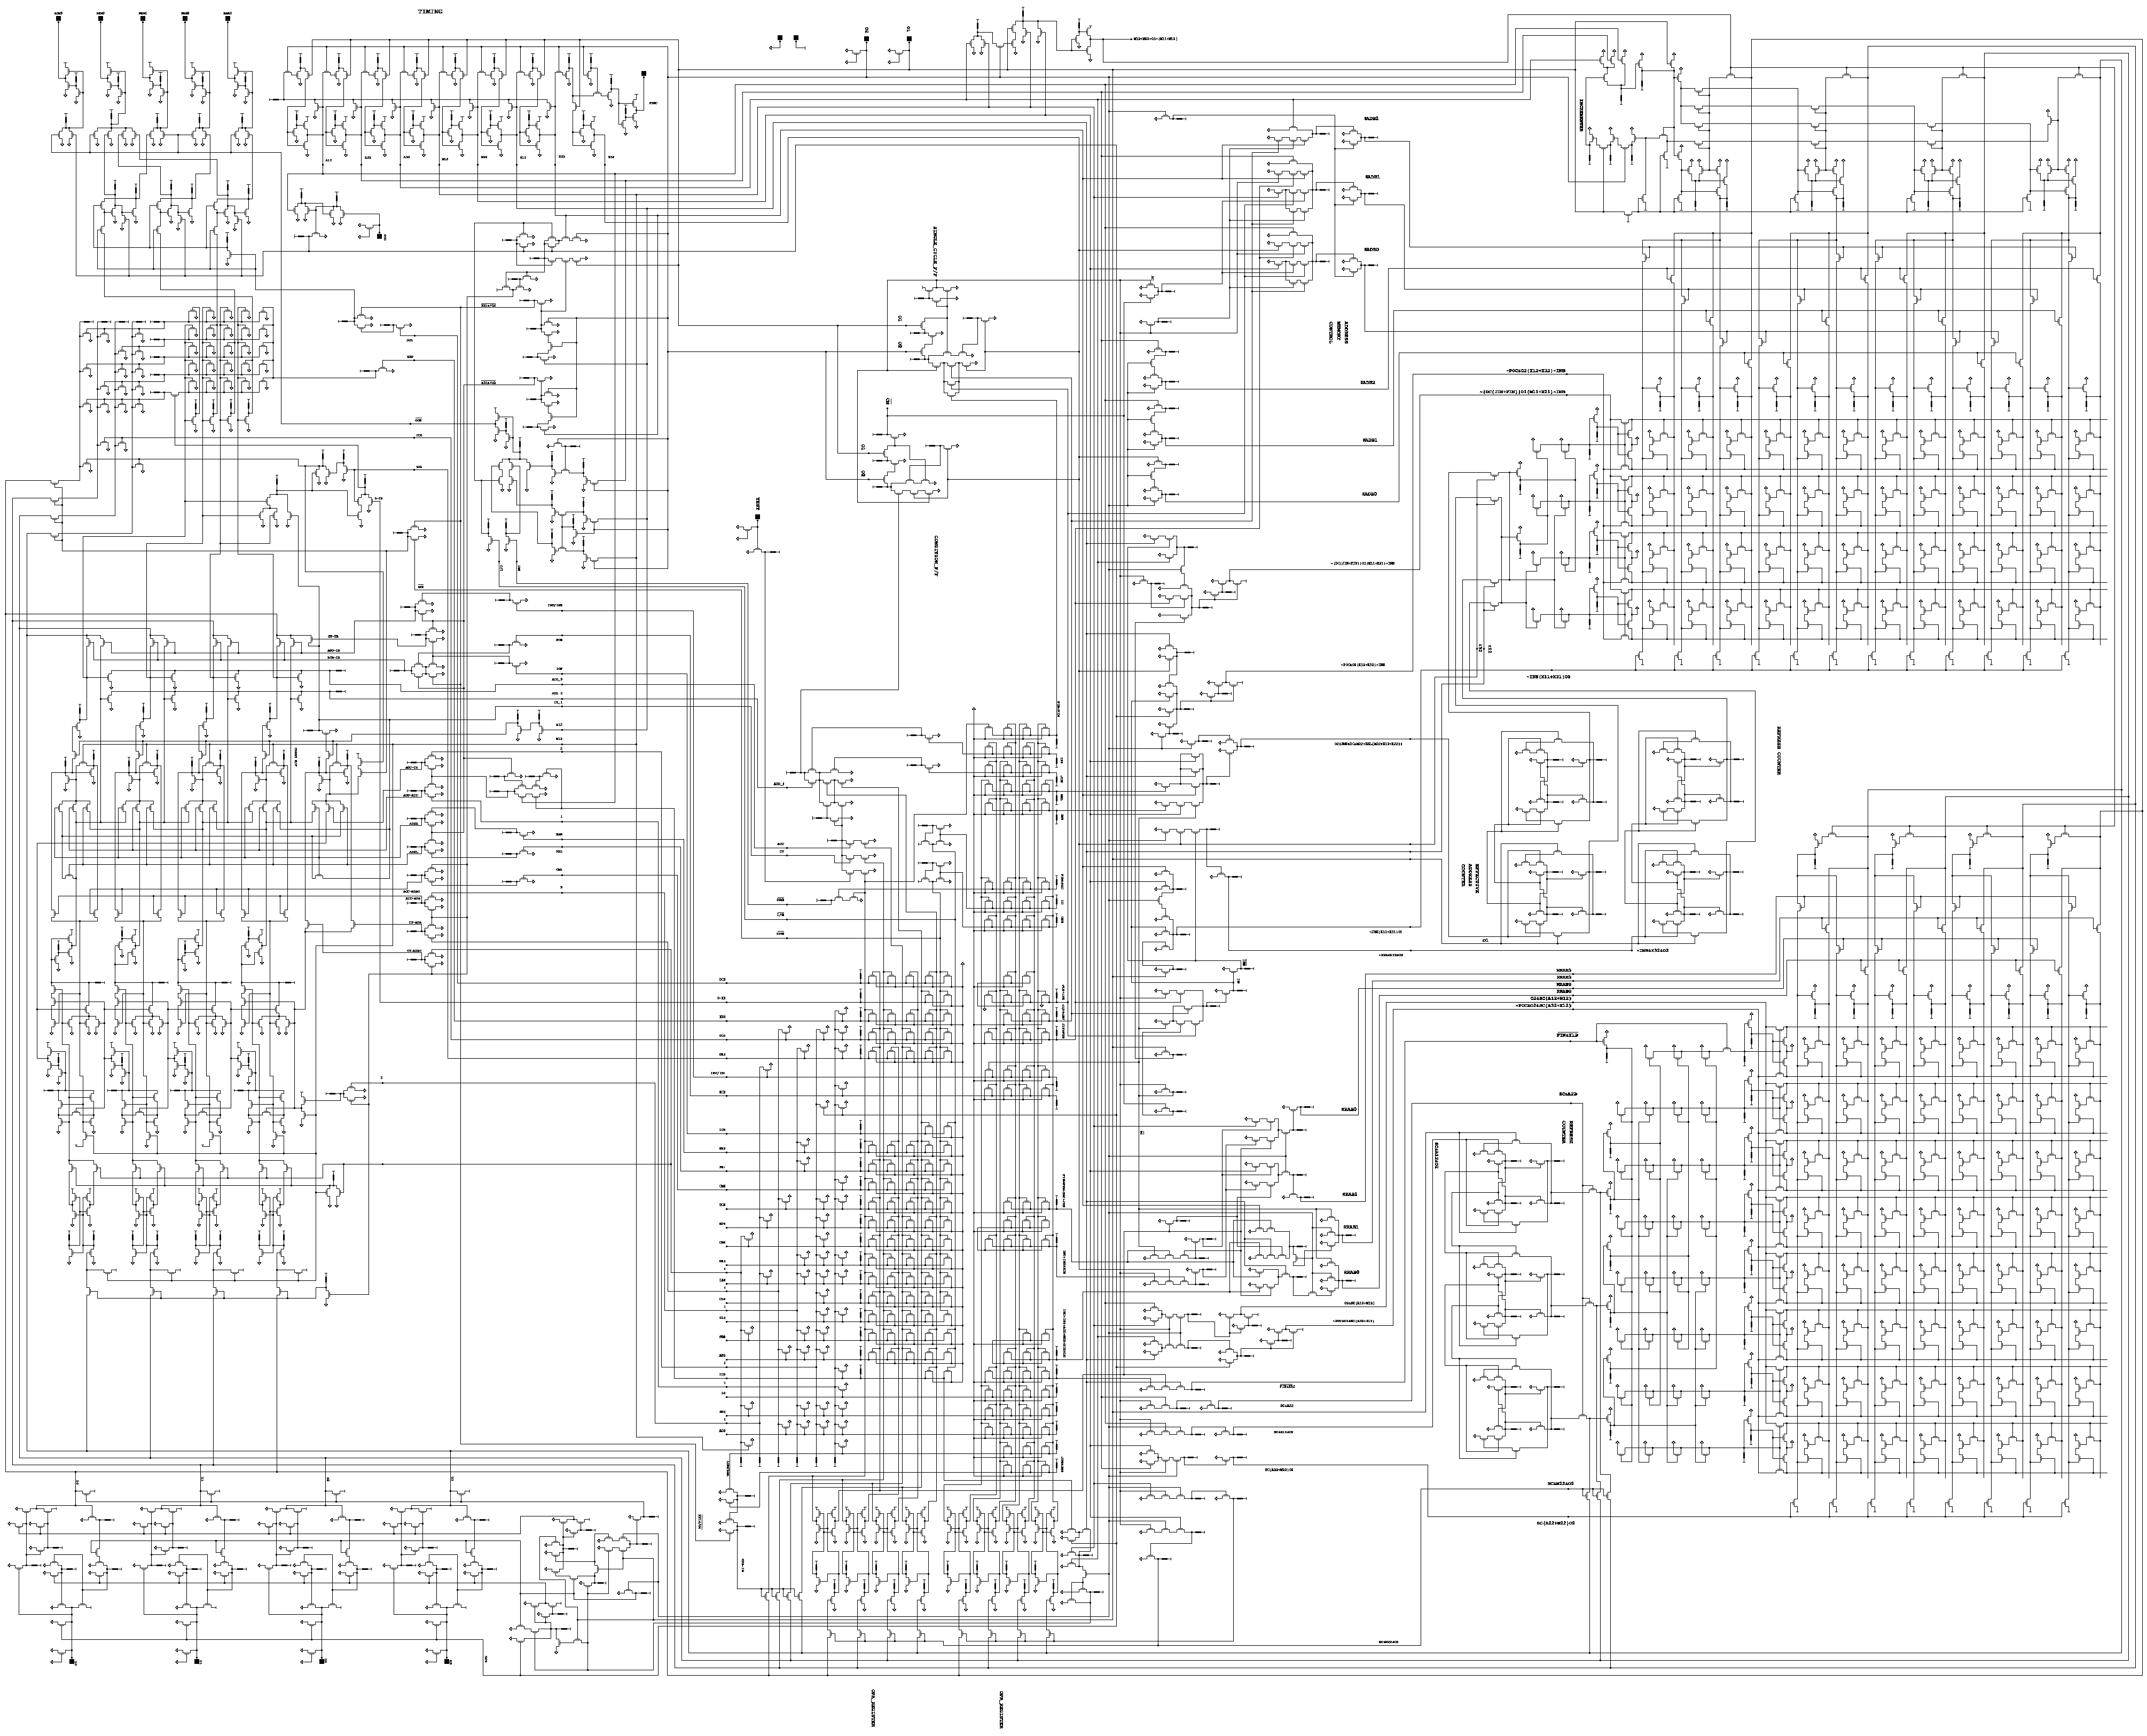 Intel 4004 schematic